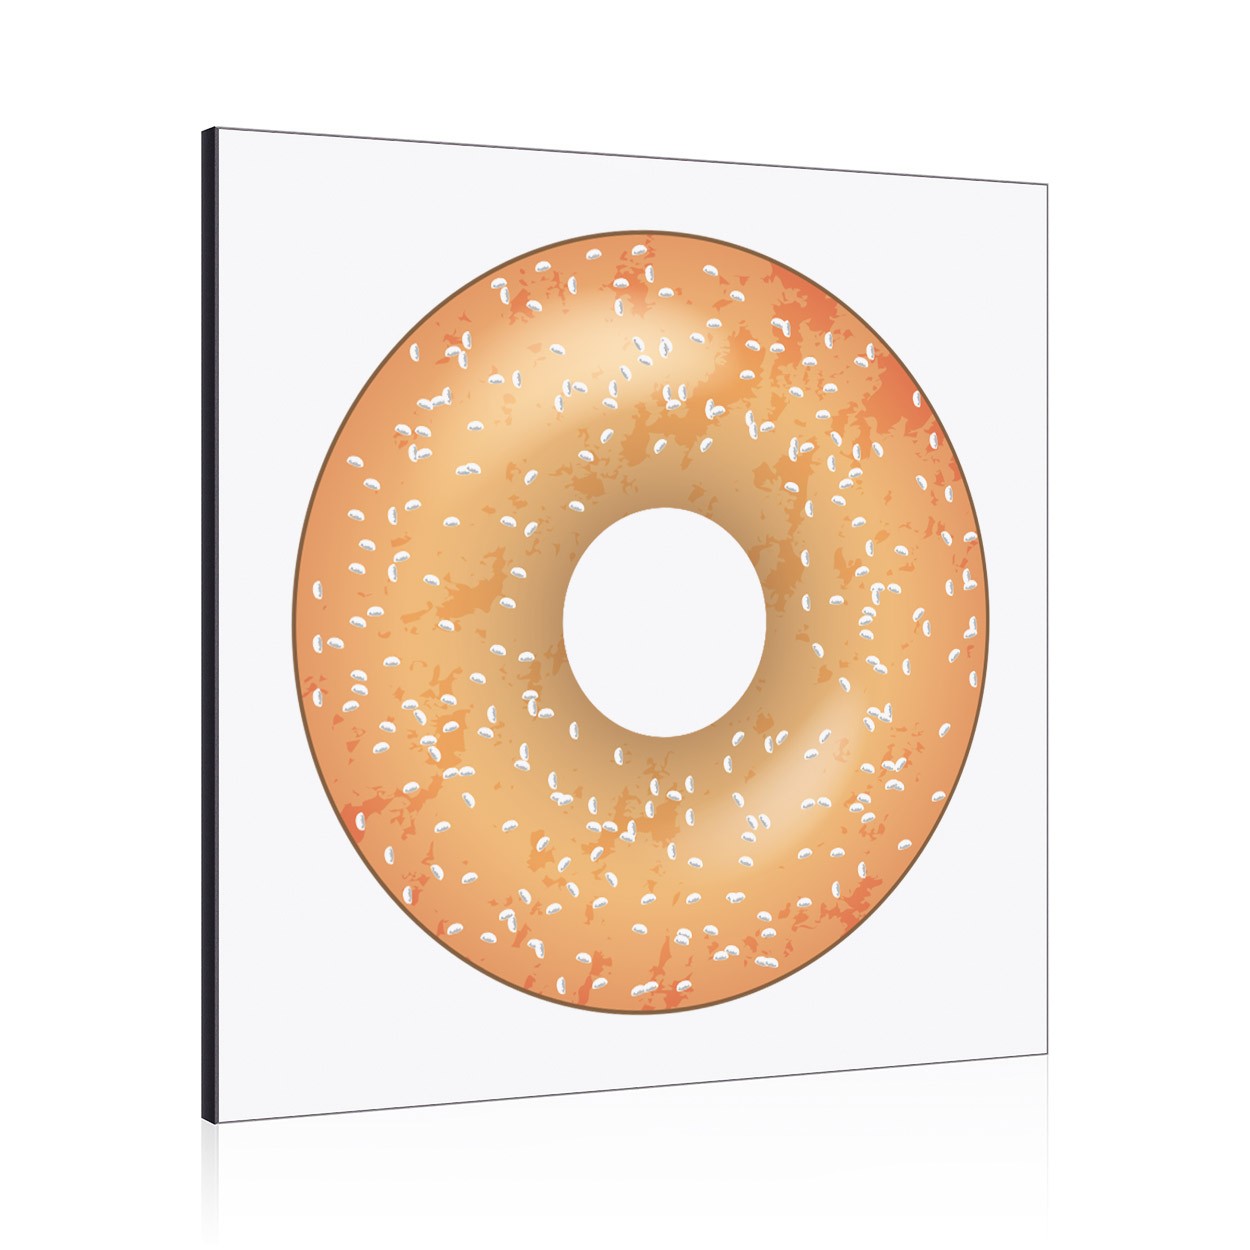 Sprinkled Glazed Doughnut Donut Wall Art Panel